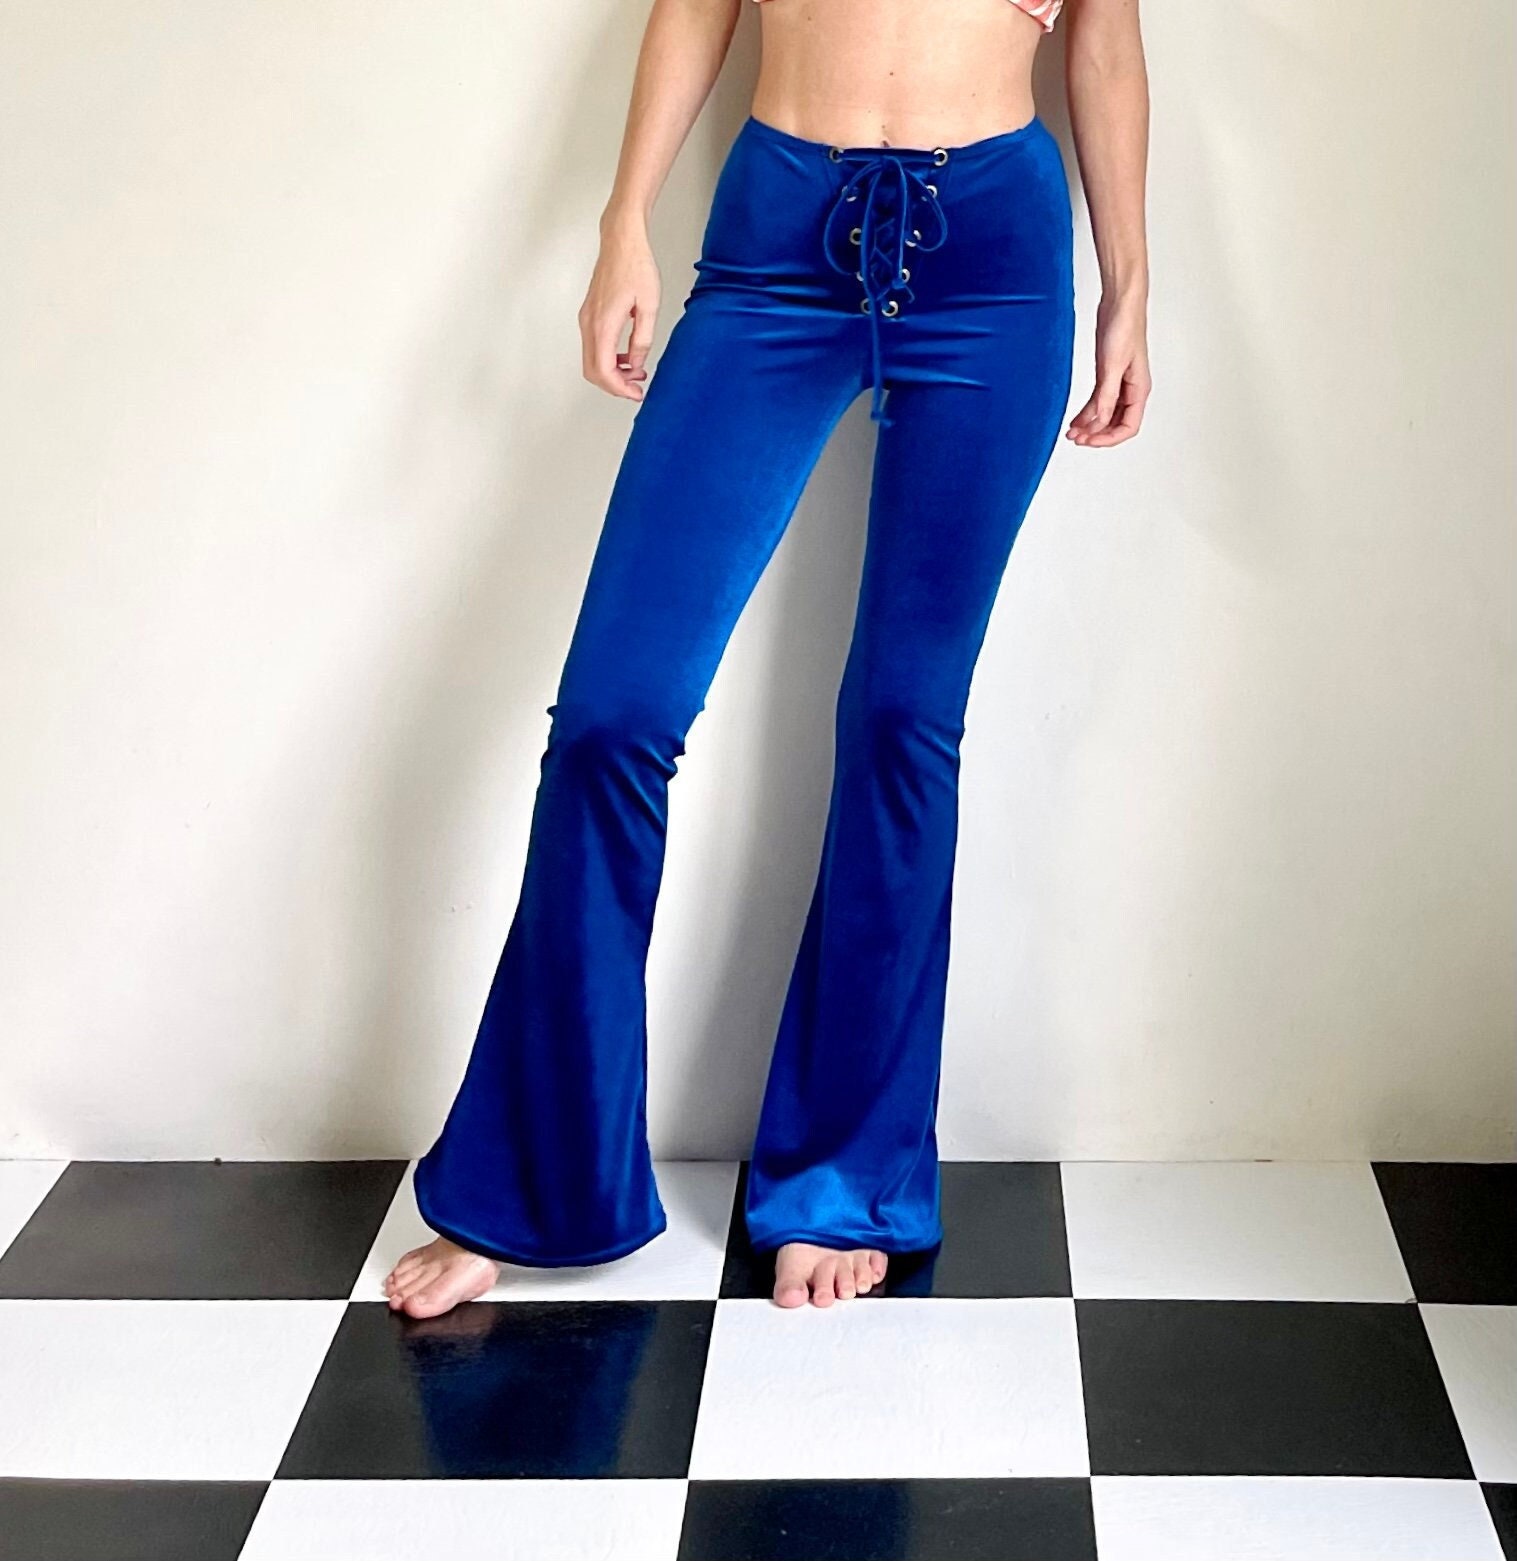 Designer Made Multi-color Premium Velvet Pants, Velvet Pants